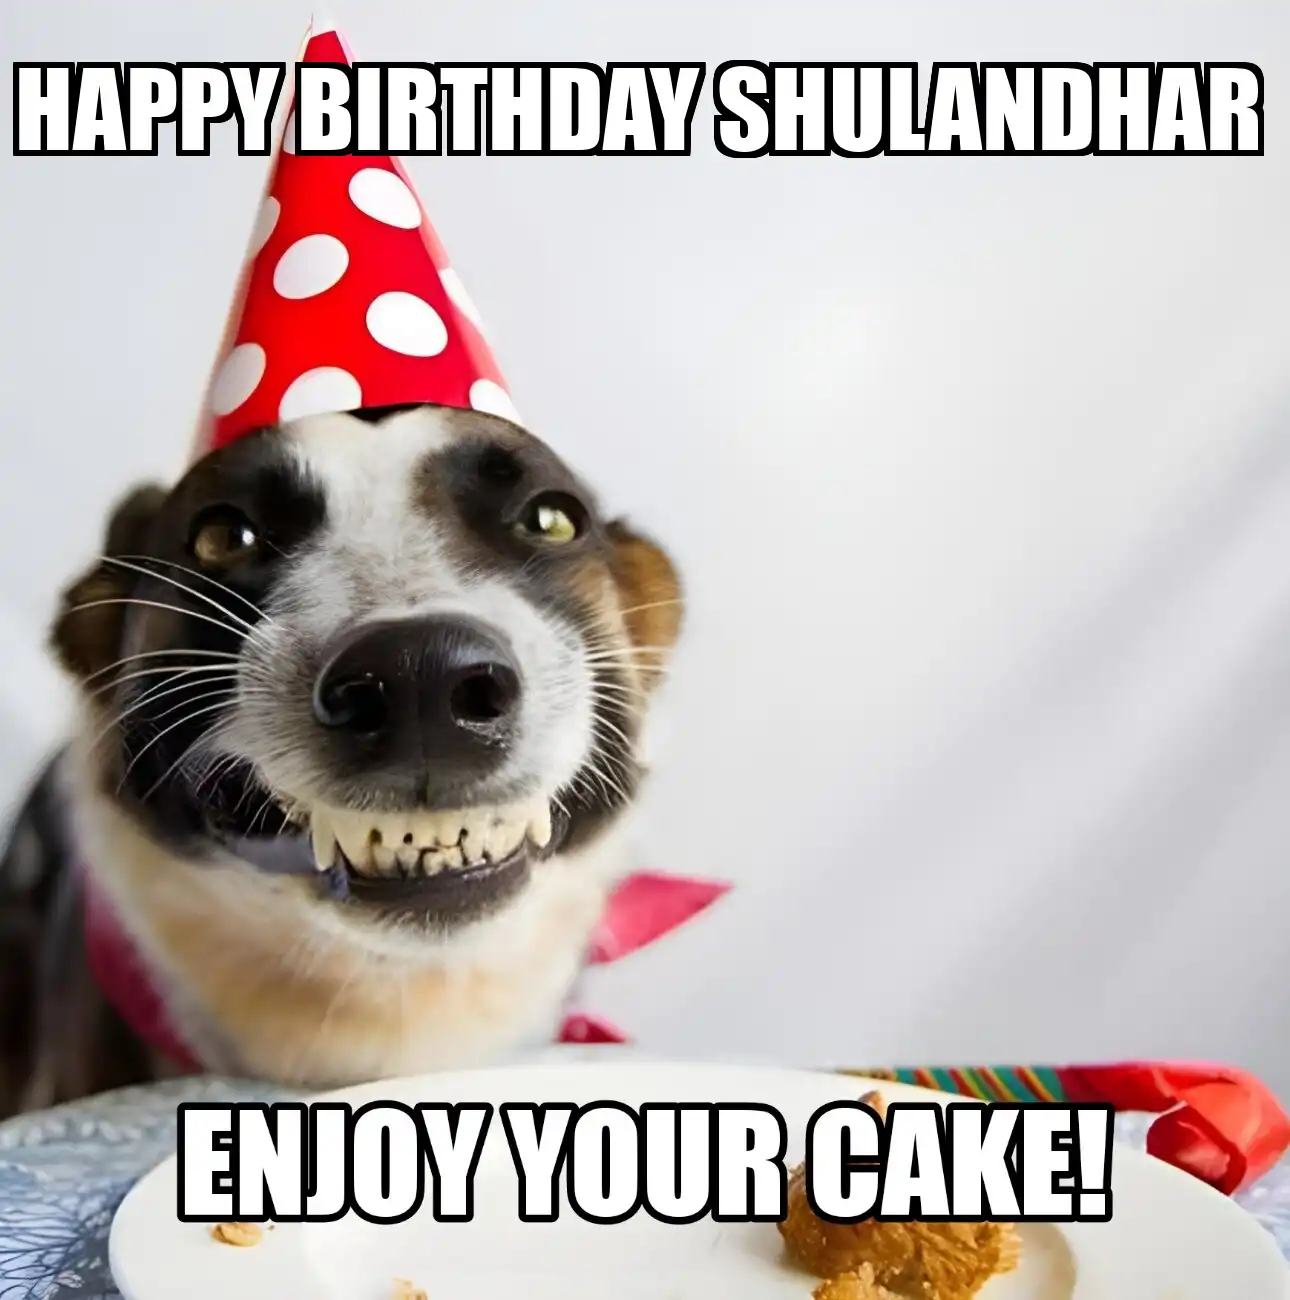 Happy Birthday Shulandhar Enjoy Your Cake Dog Meme